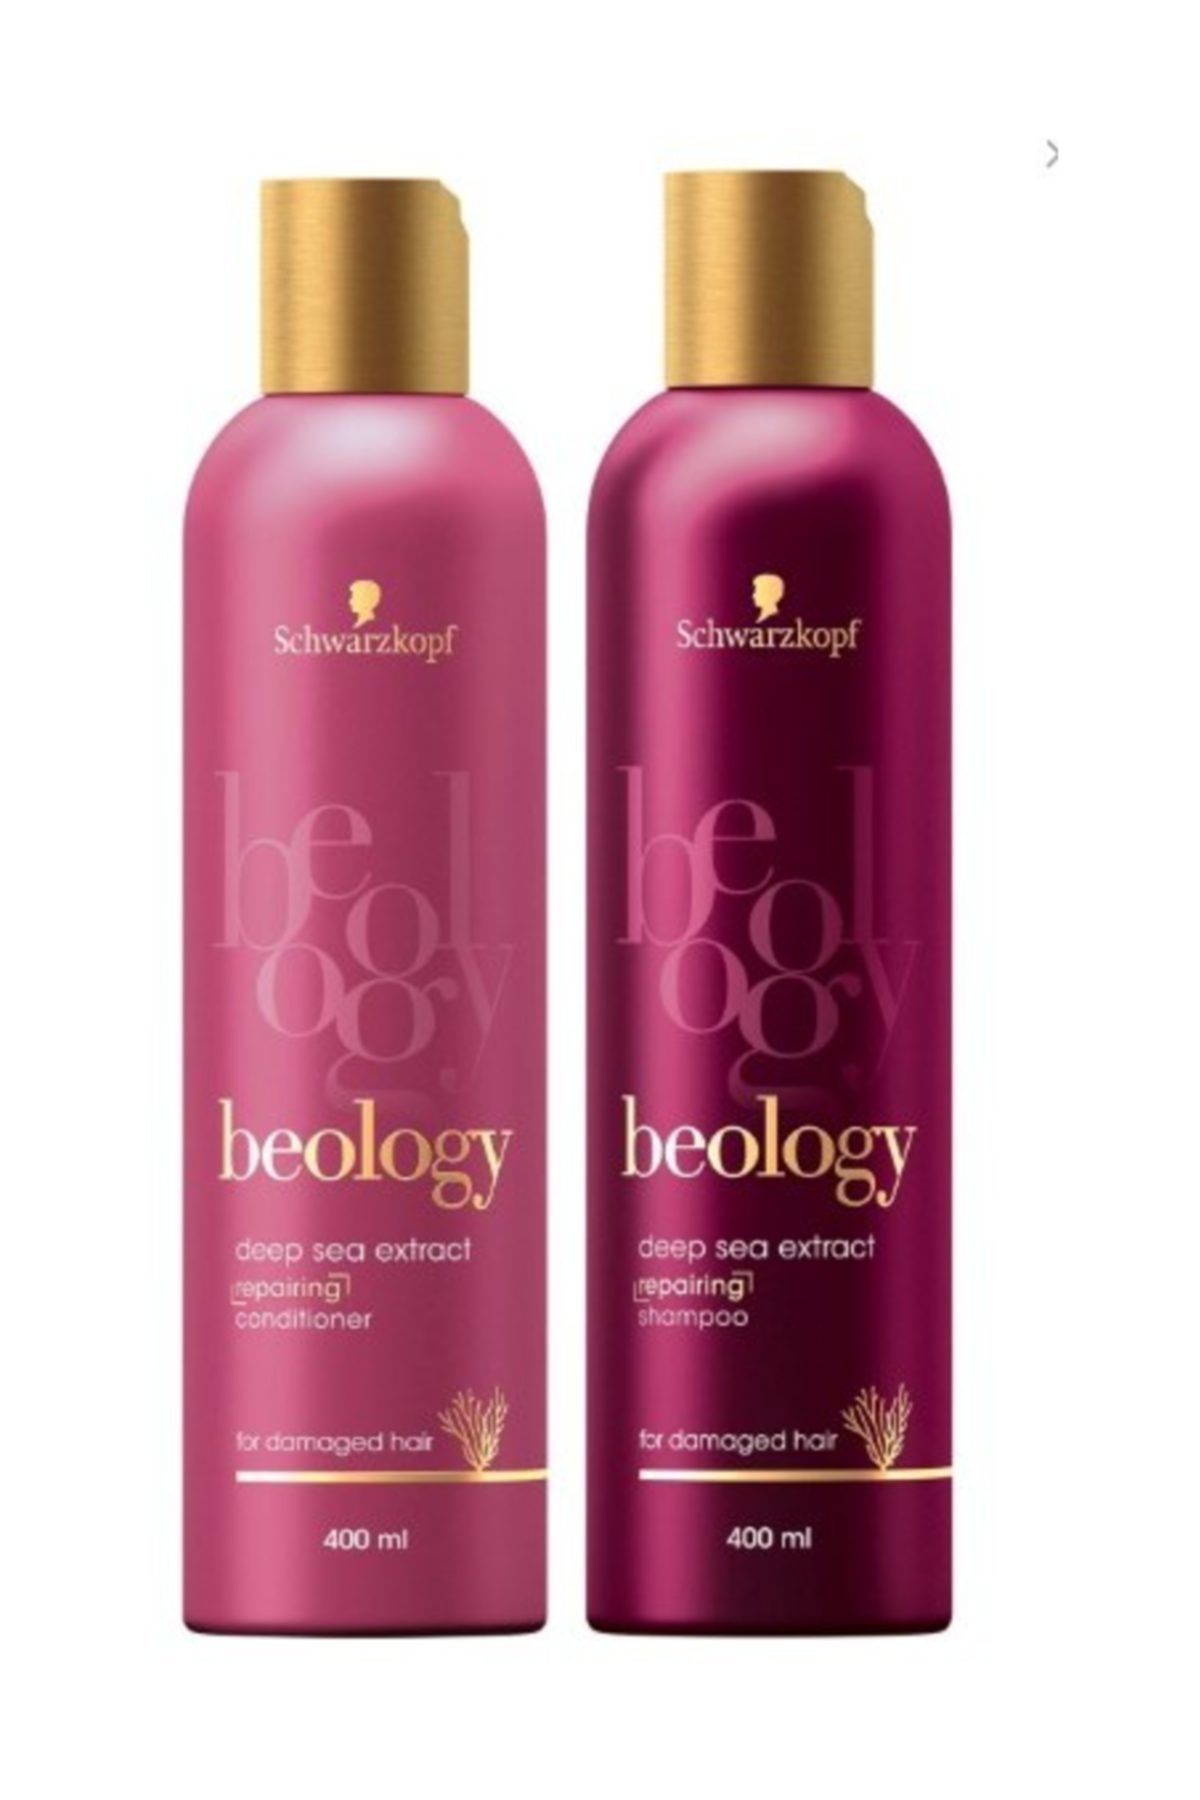 Beology Saç Bakım Şampuanı Onarıcı Seri 400 ml + Saç Bakım Kremi Onarıcı Seri 400 ml 2 Li